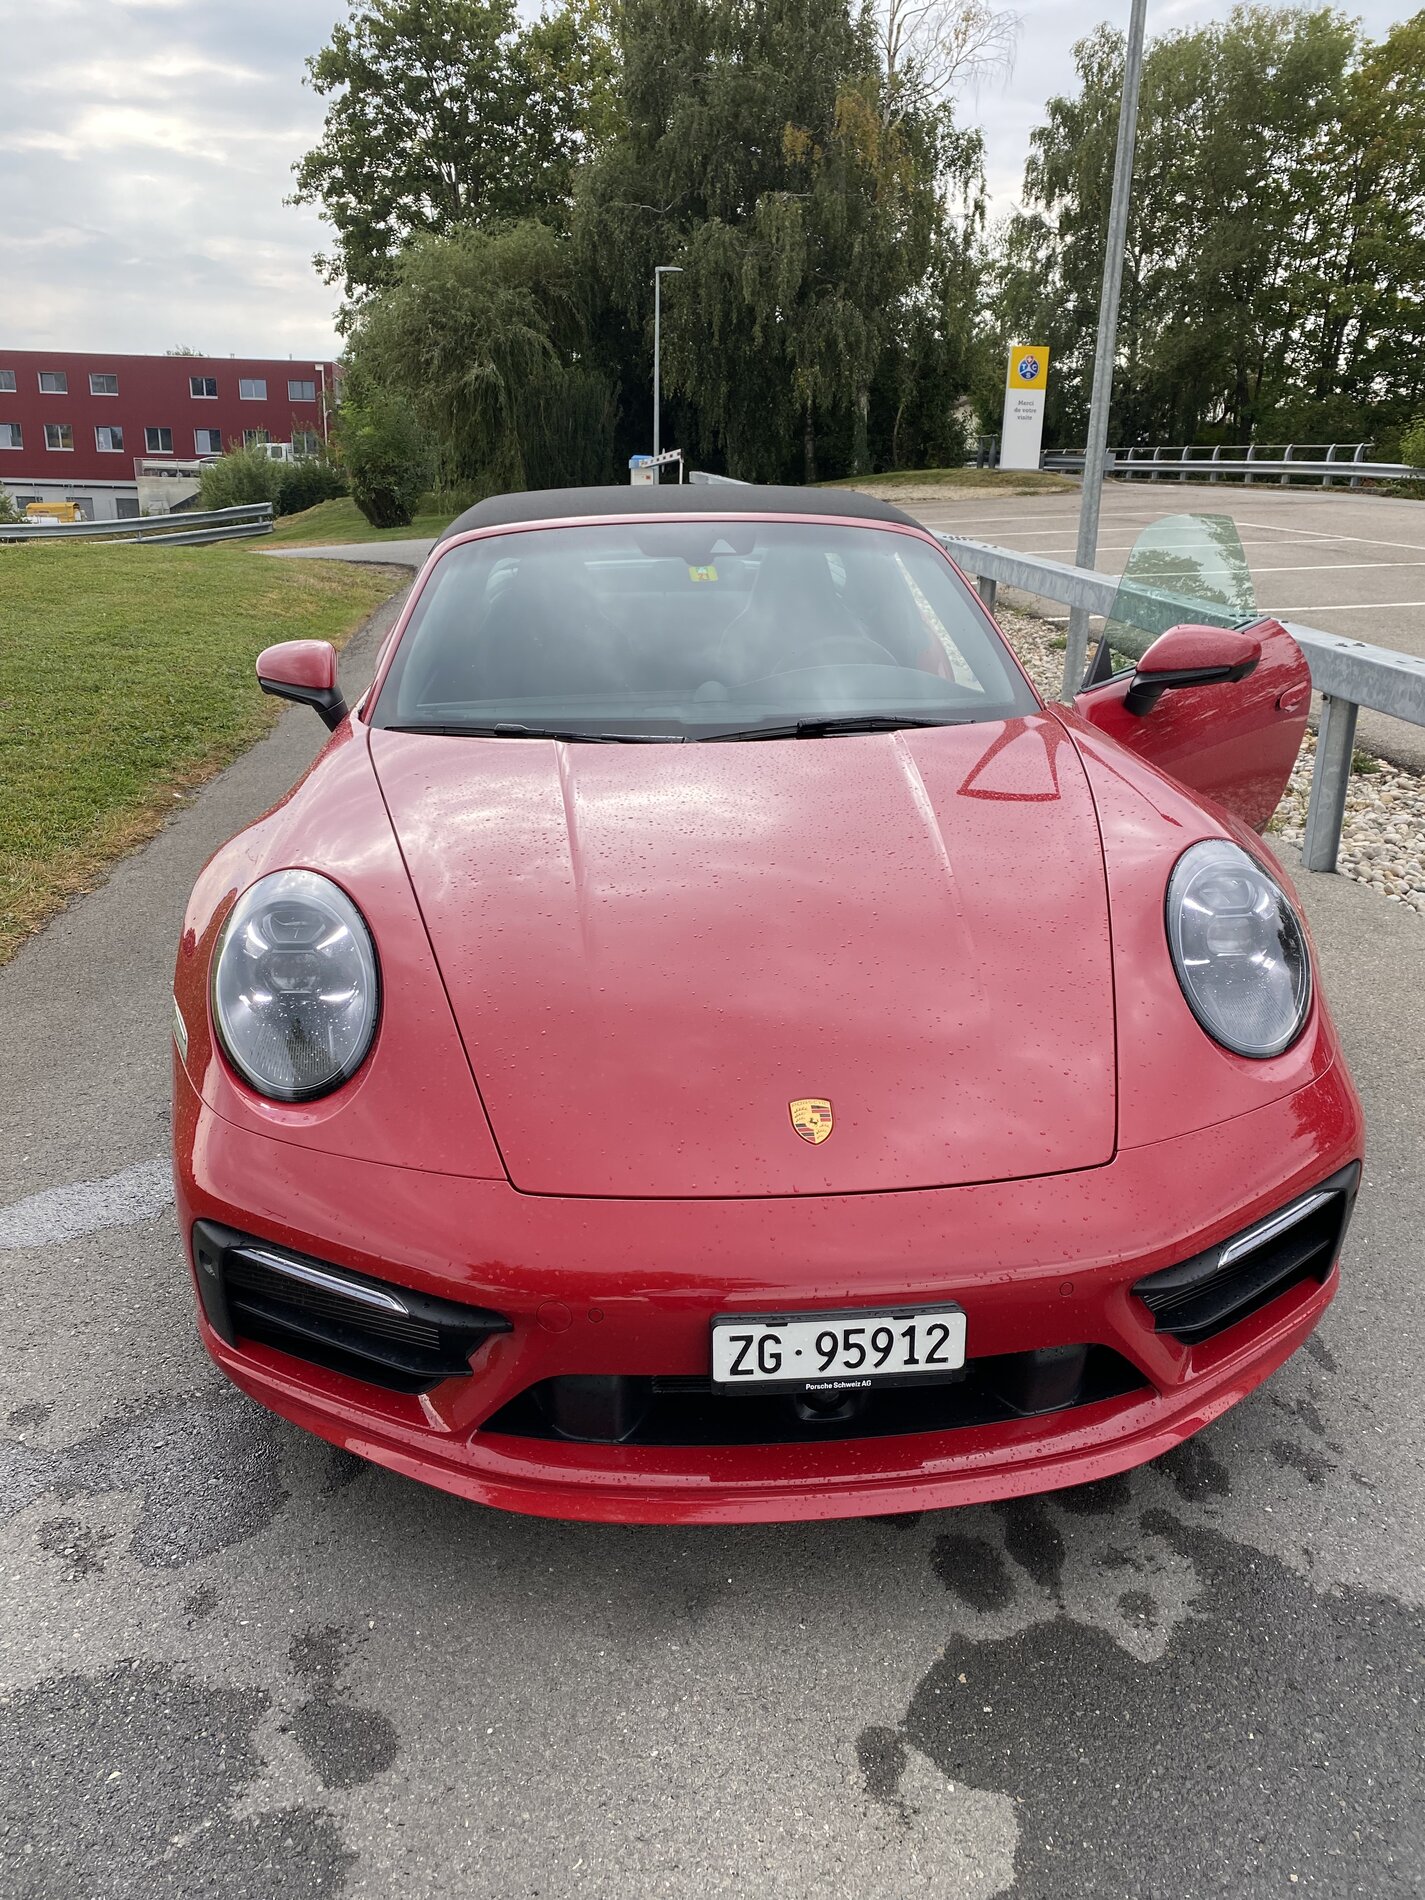 Porsche Taycan Porsche Experience Day - videos & pics 0F64873C-1183-4588-8668-F9E93C422591